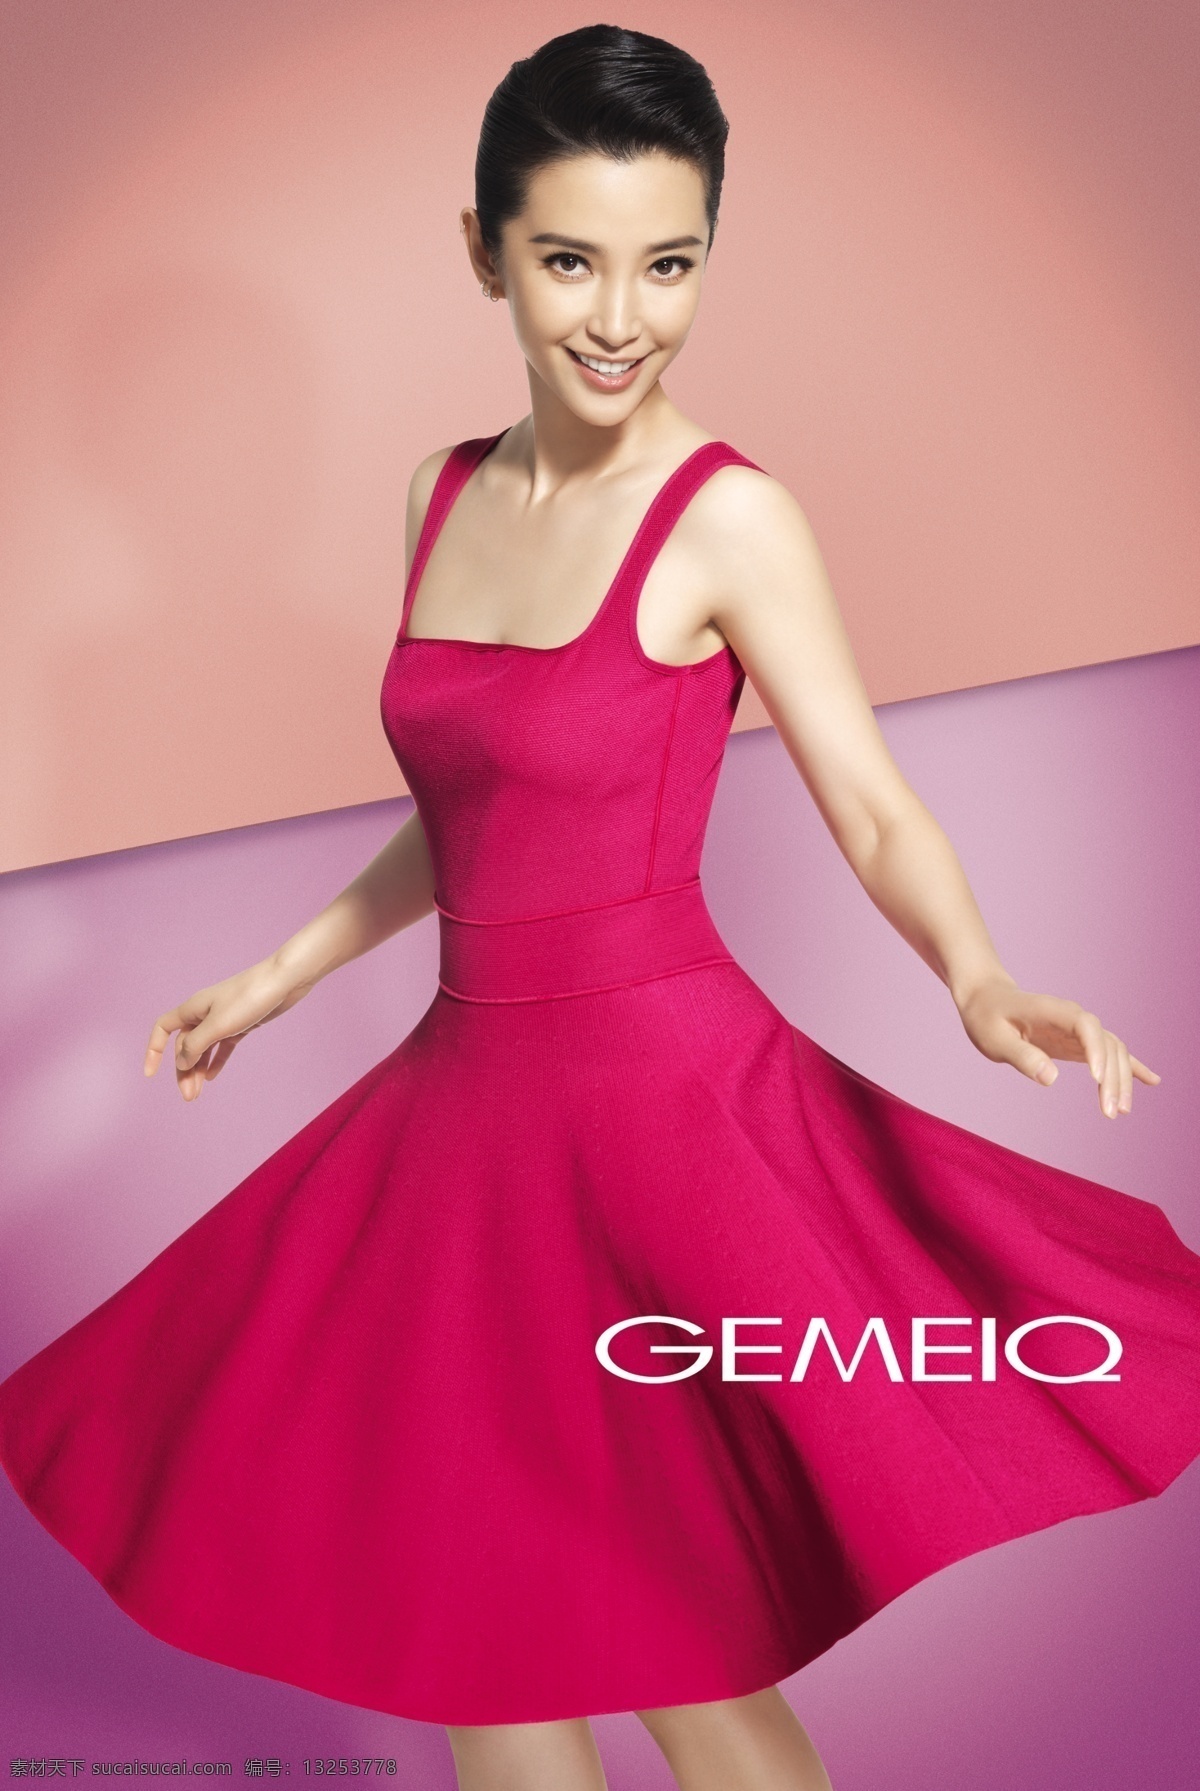 李冰冰 gemeiq 服装 品牌代言 海报 广告设计模板 源文件